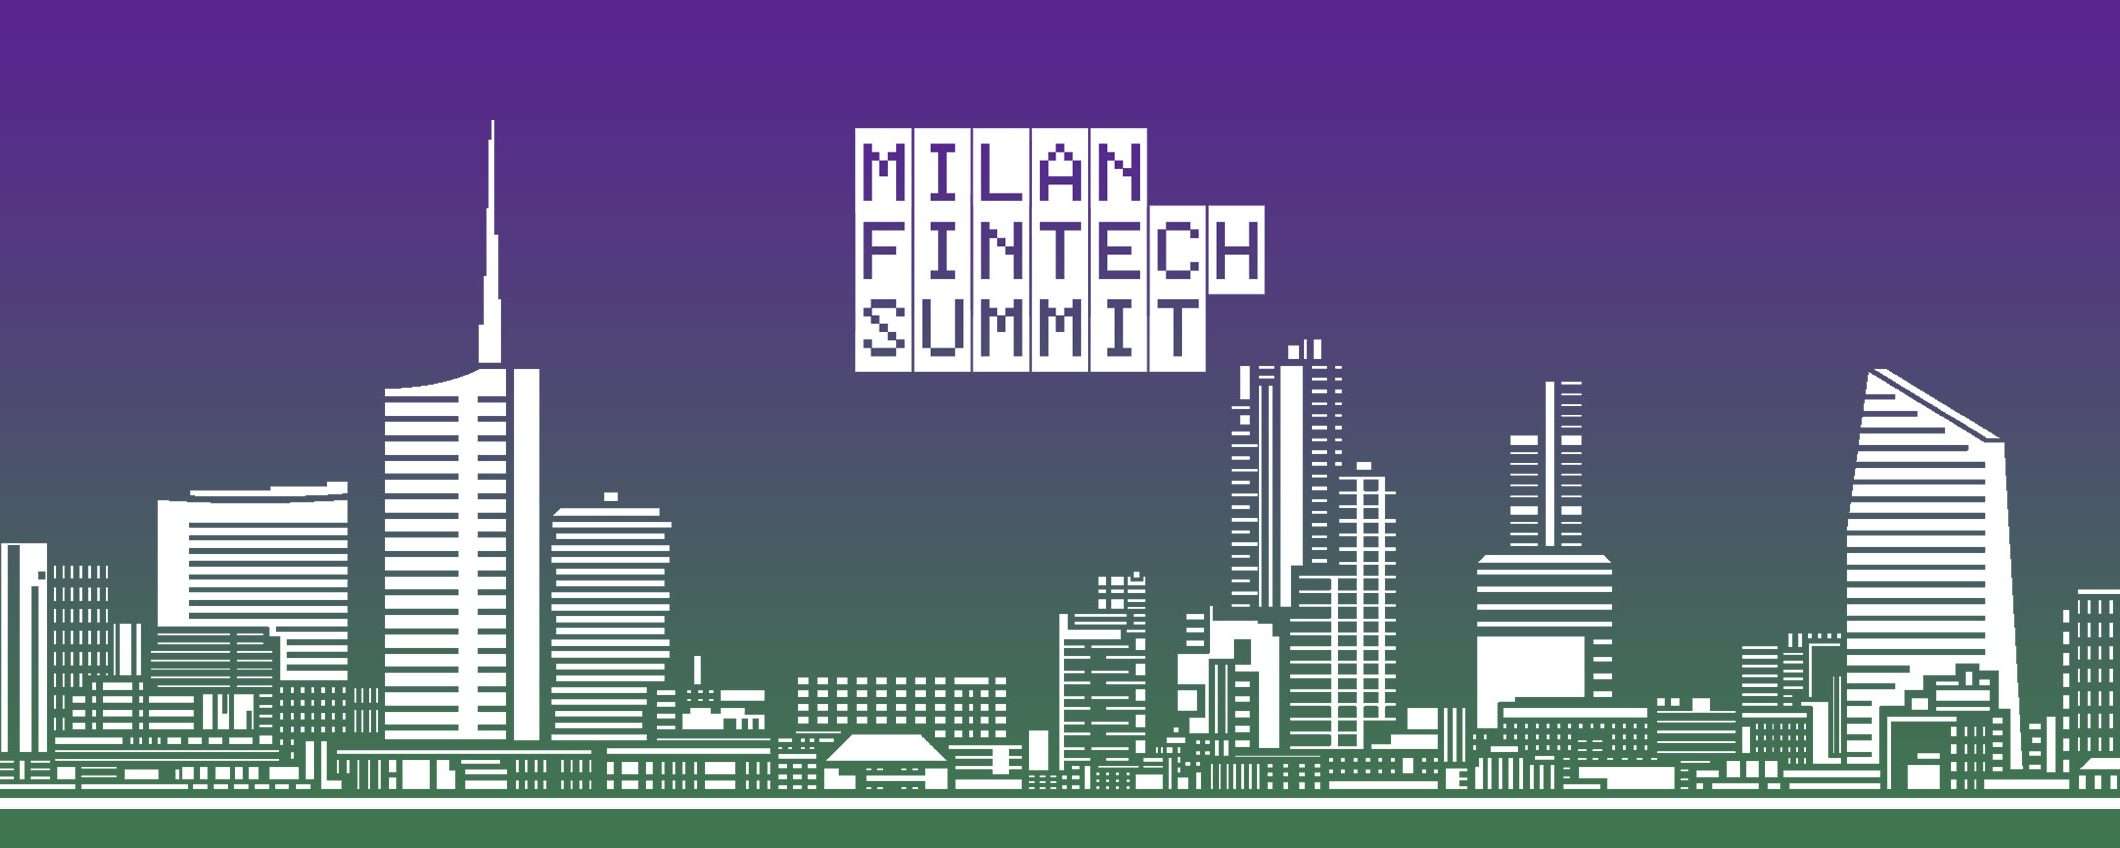 Milan Fintech Summit, terza edizione dal 5 ottobre